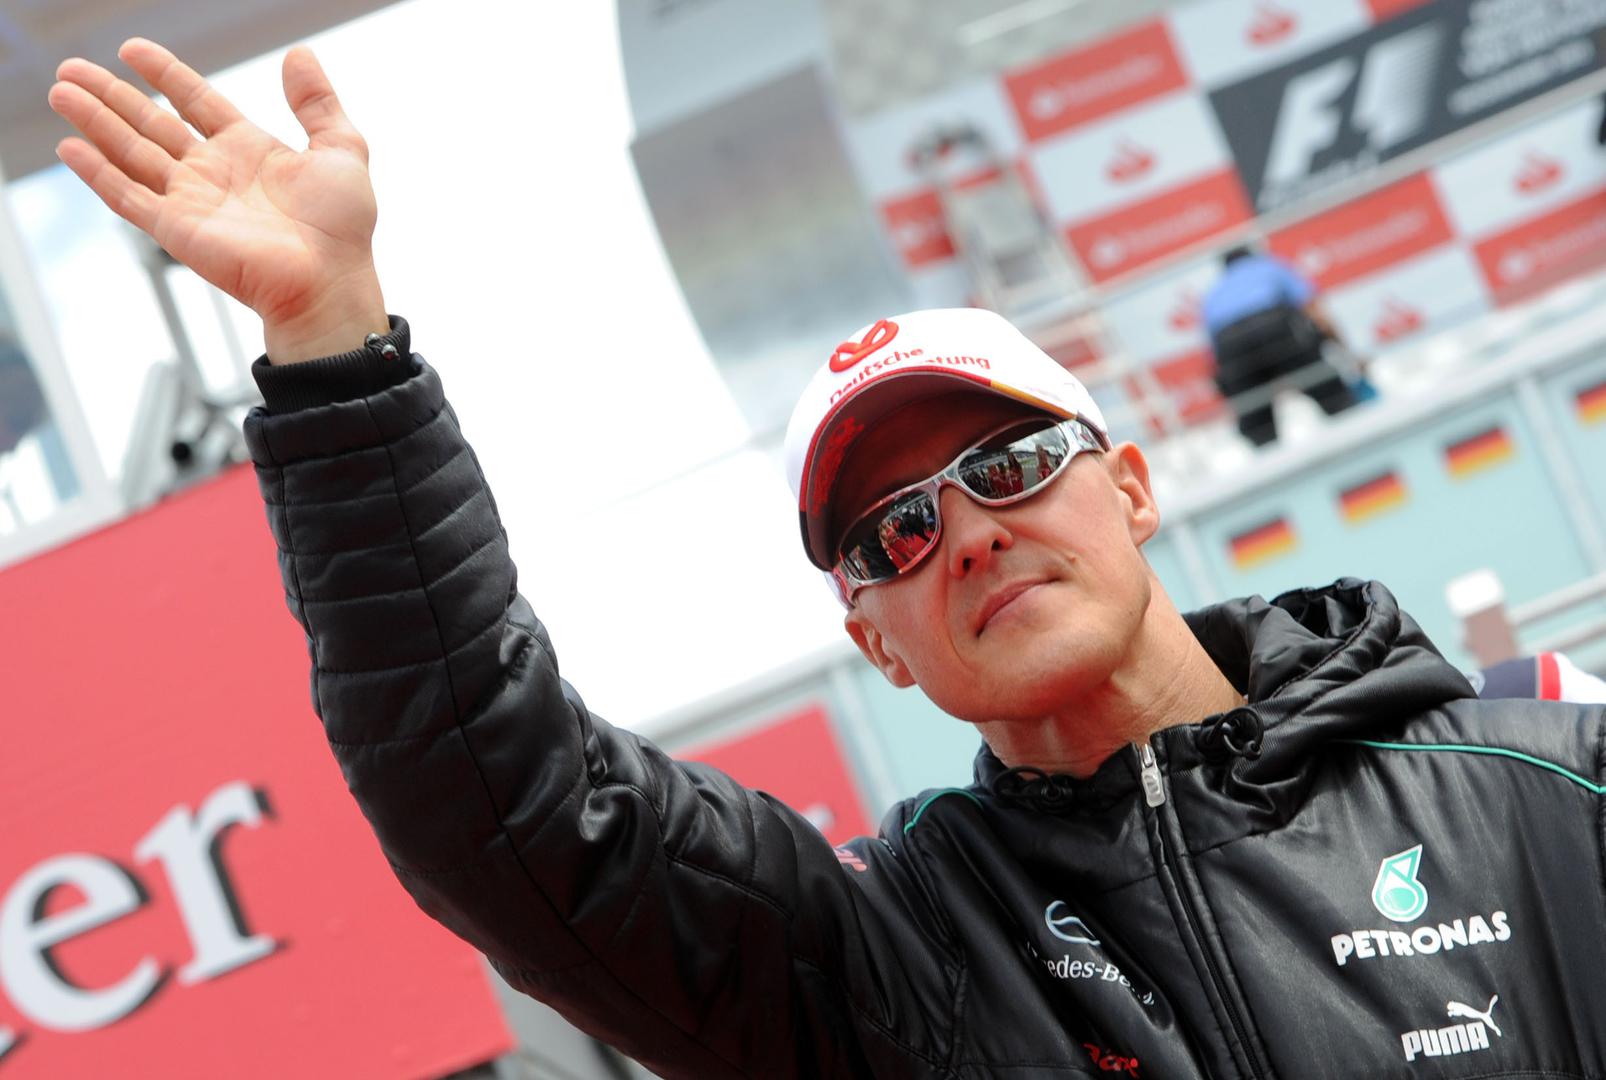 Sedmerostruki svjetski prvak u formuli 1 teško se ozlijedio na skijanju u francuskim Alpama 29. prosinca 2013. godine. Nekoliko je mjeseci bio u komi, a zatim je iz bolnice u Grenobleu prebačen u dom u Genevi. Obitelj se popuno izolirala od javnosti i posljednje četiri godine ne zna se ništa o zdravstvenom stanju Michaela Schumachera."